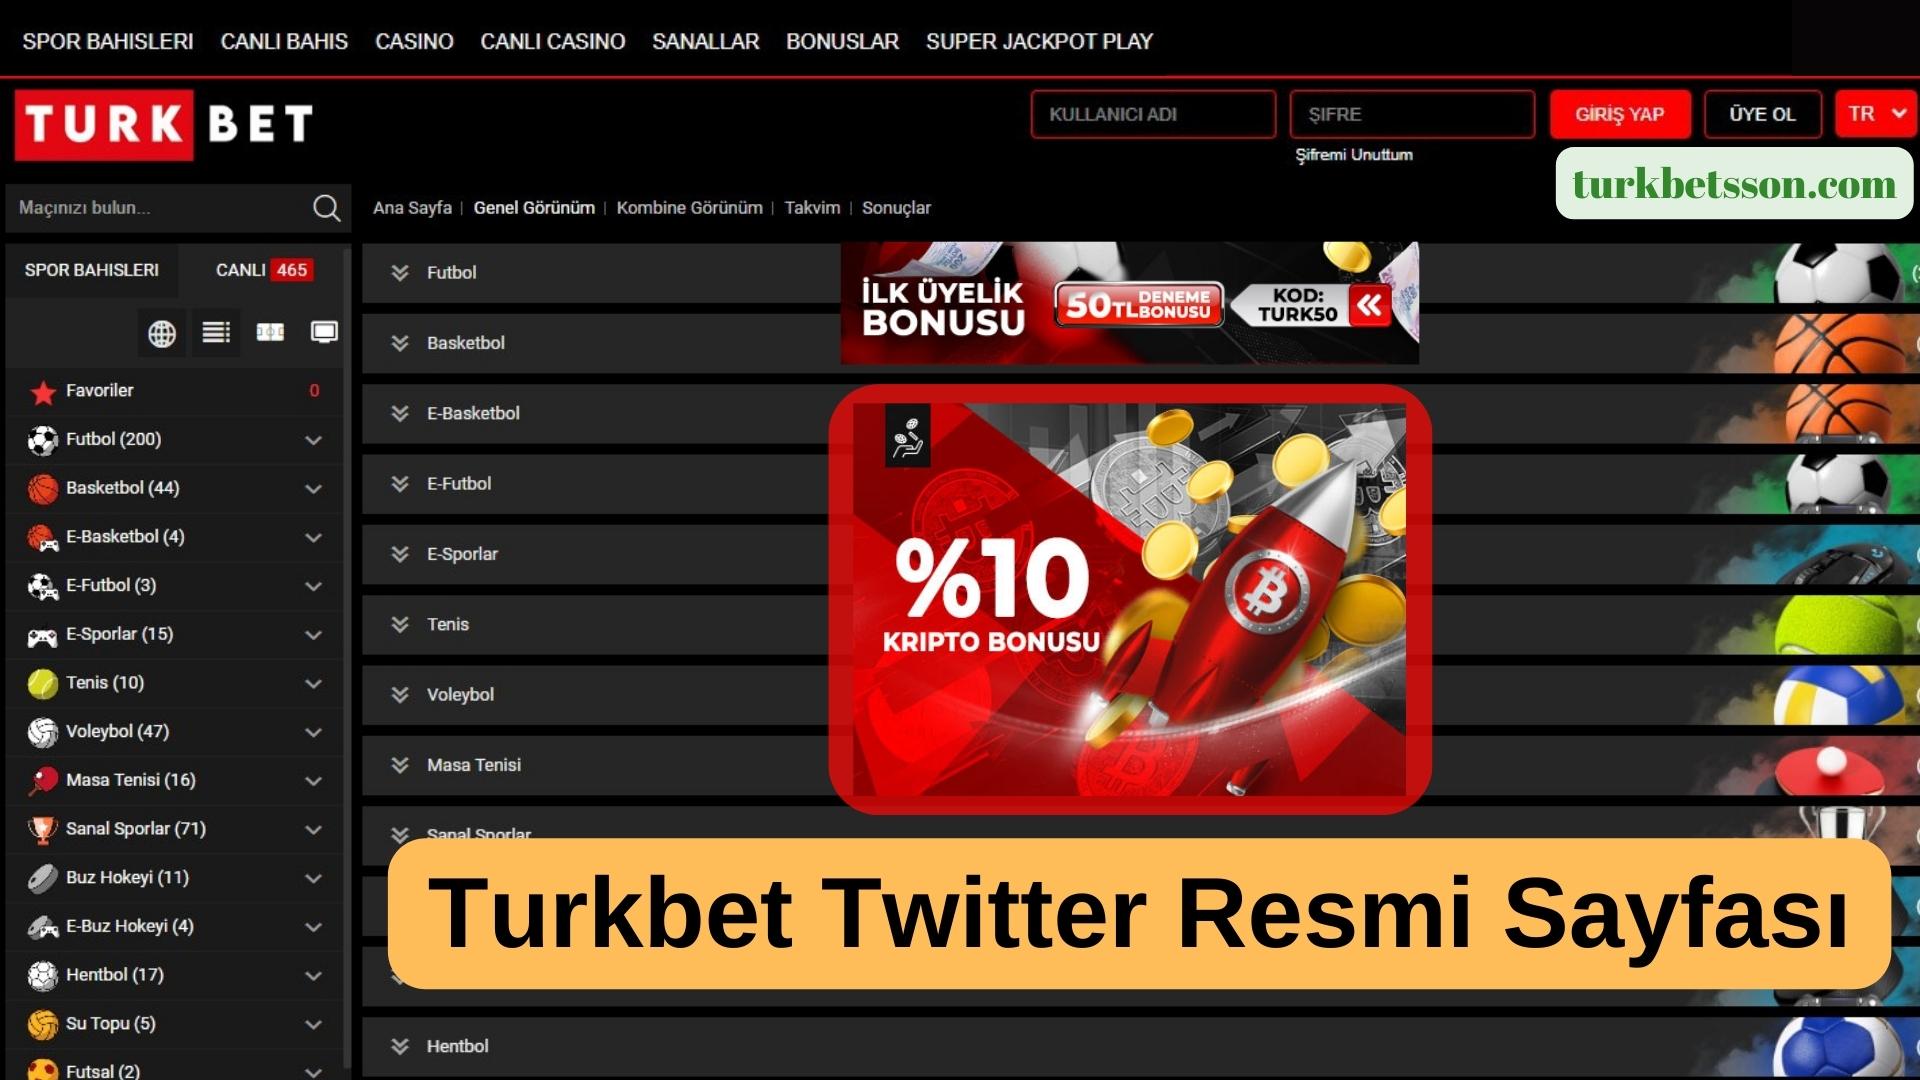 Turkbet Twitter Resmi Sayfası